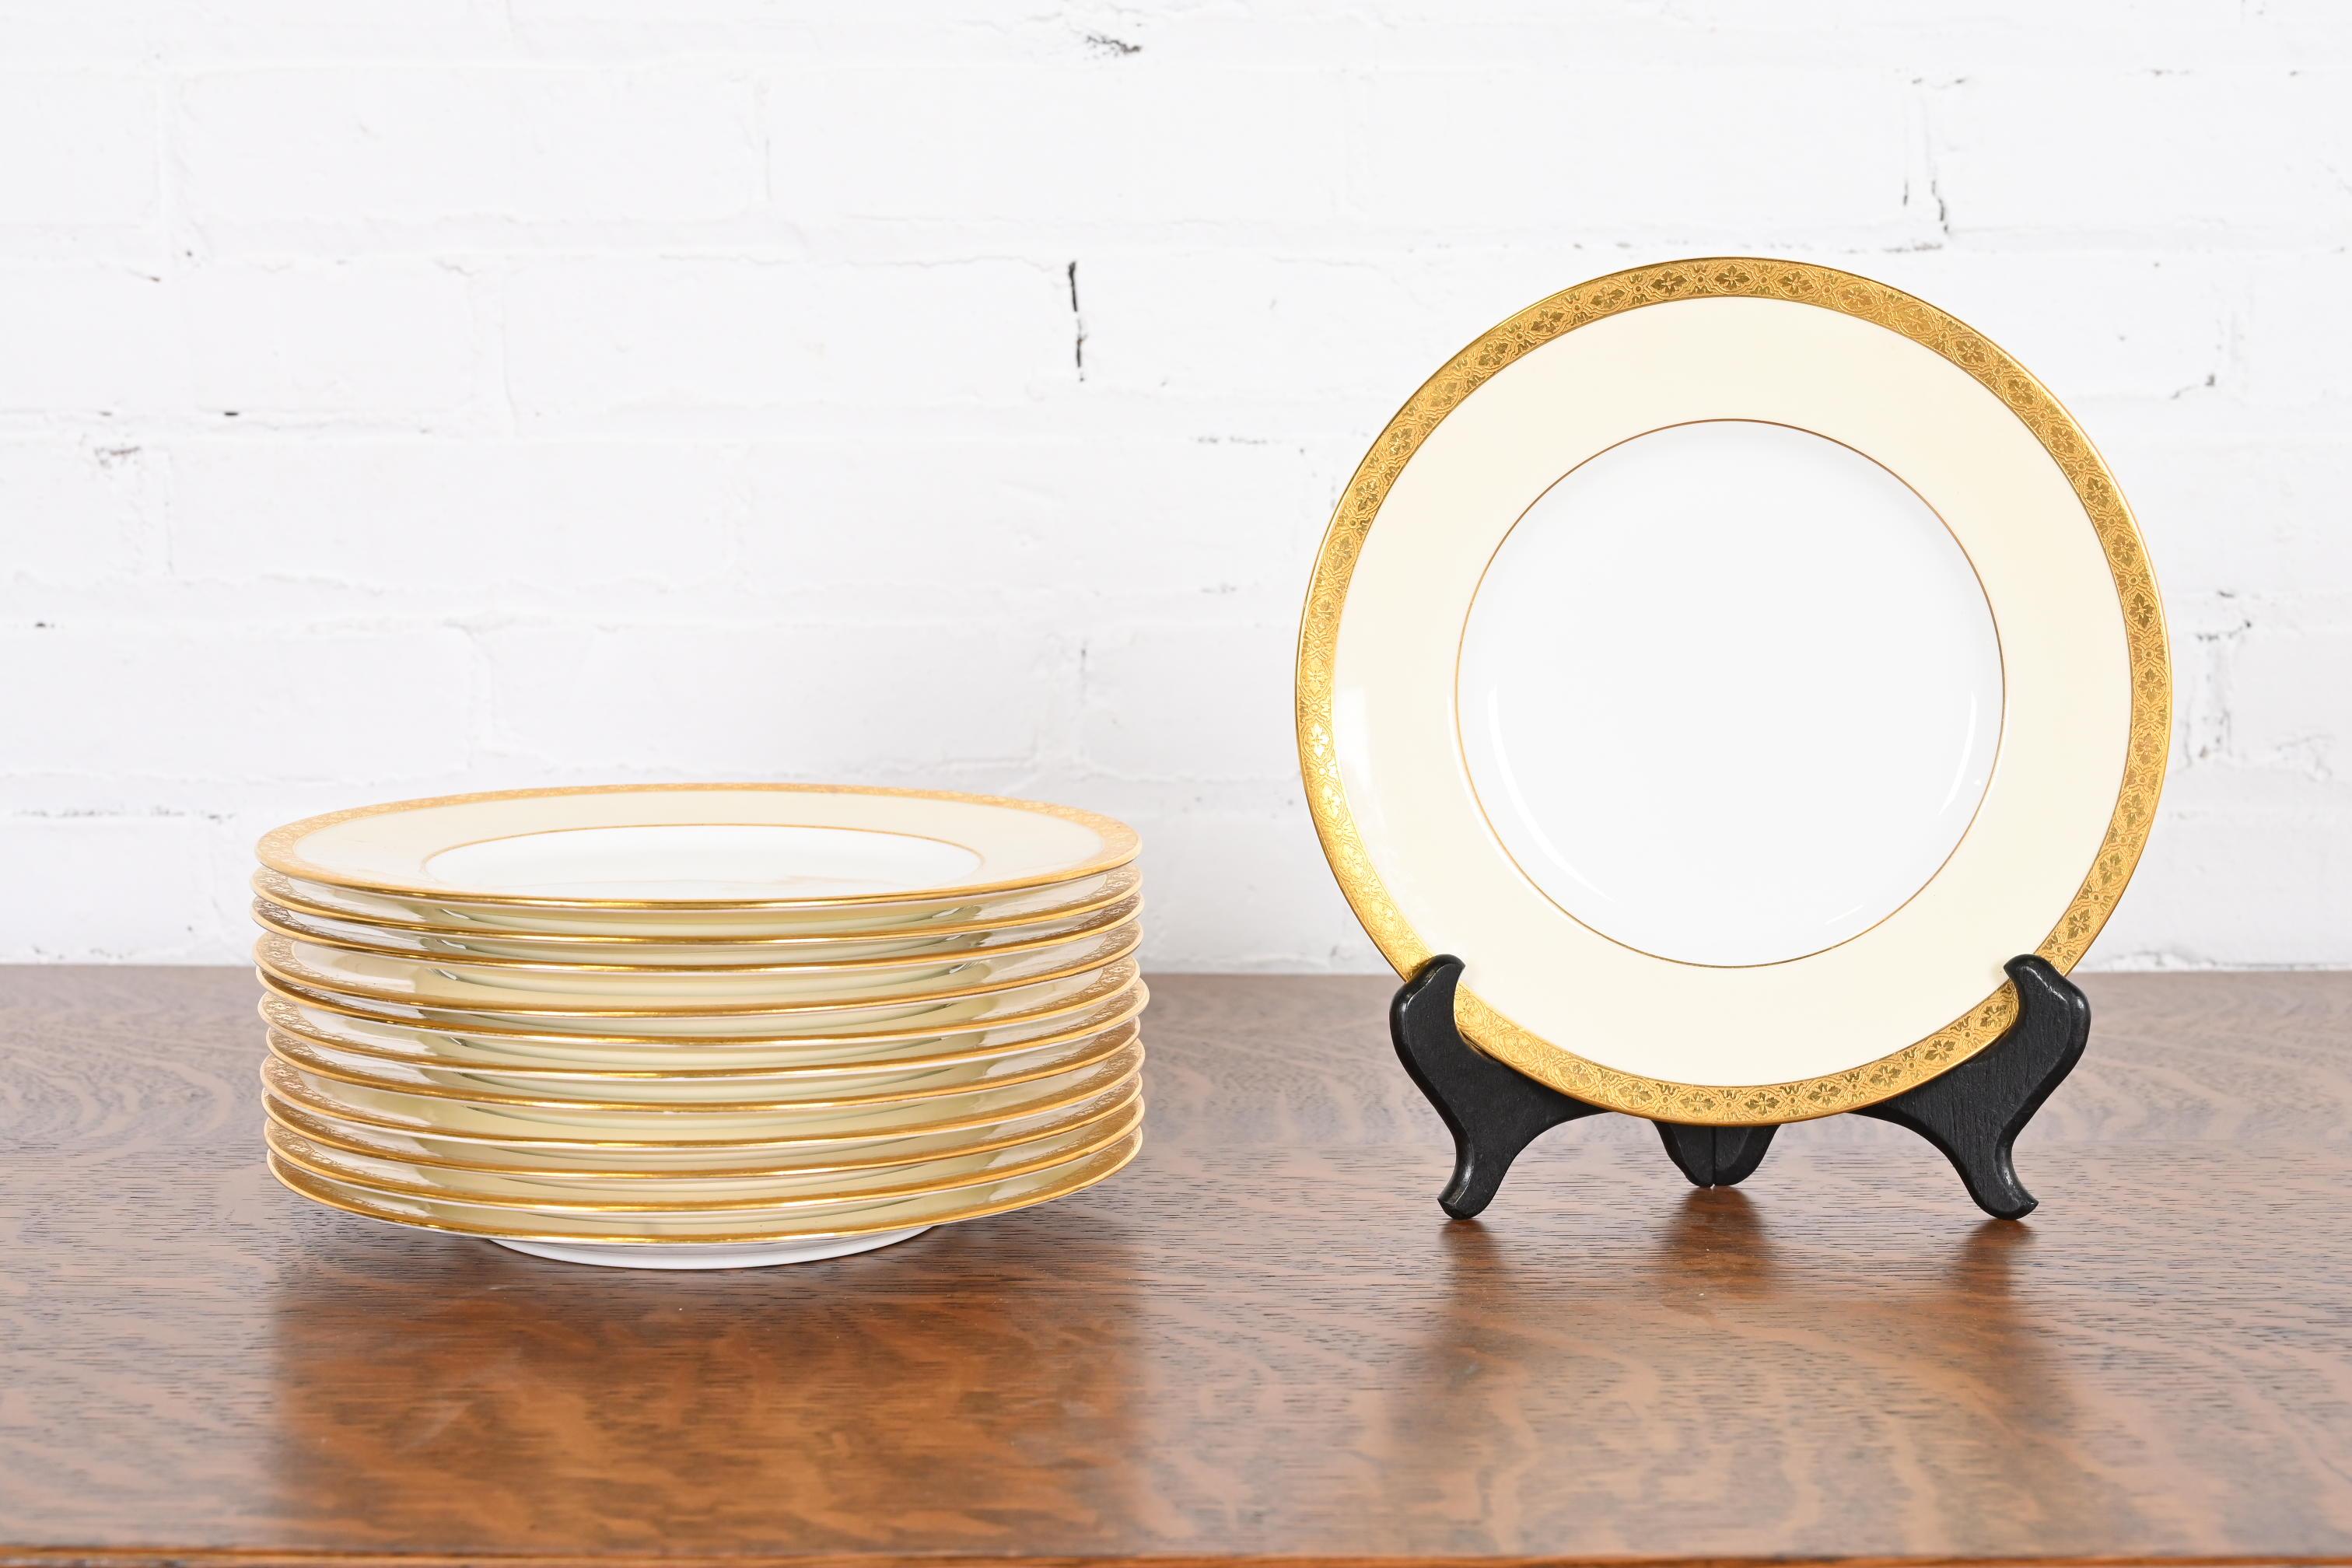 Magnifique ensemble de douze assiettes à dessert Art déco avec bordure dorée

Par Minton pour Tiffany & Co.

Angleterre, Vers les années 1930

Mesures : 9 